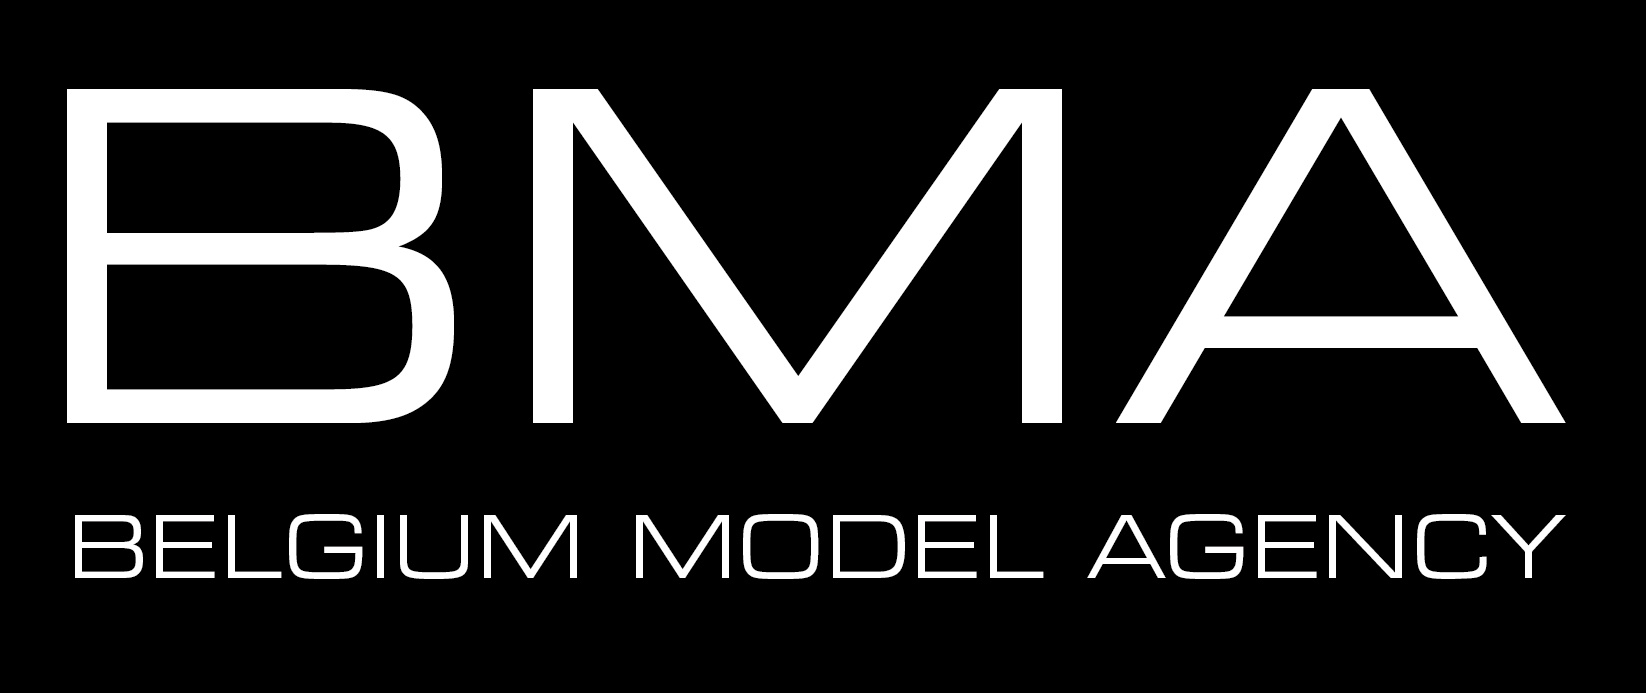 Belgium Model Agency